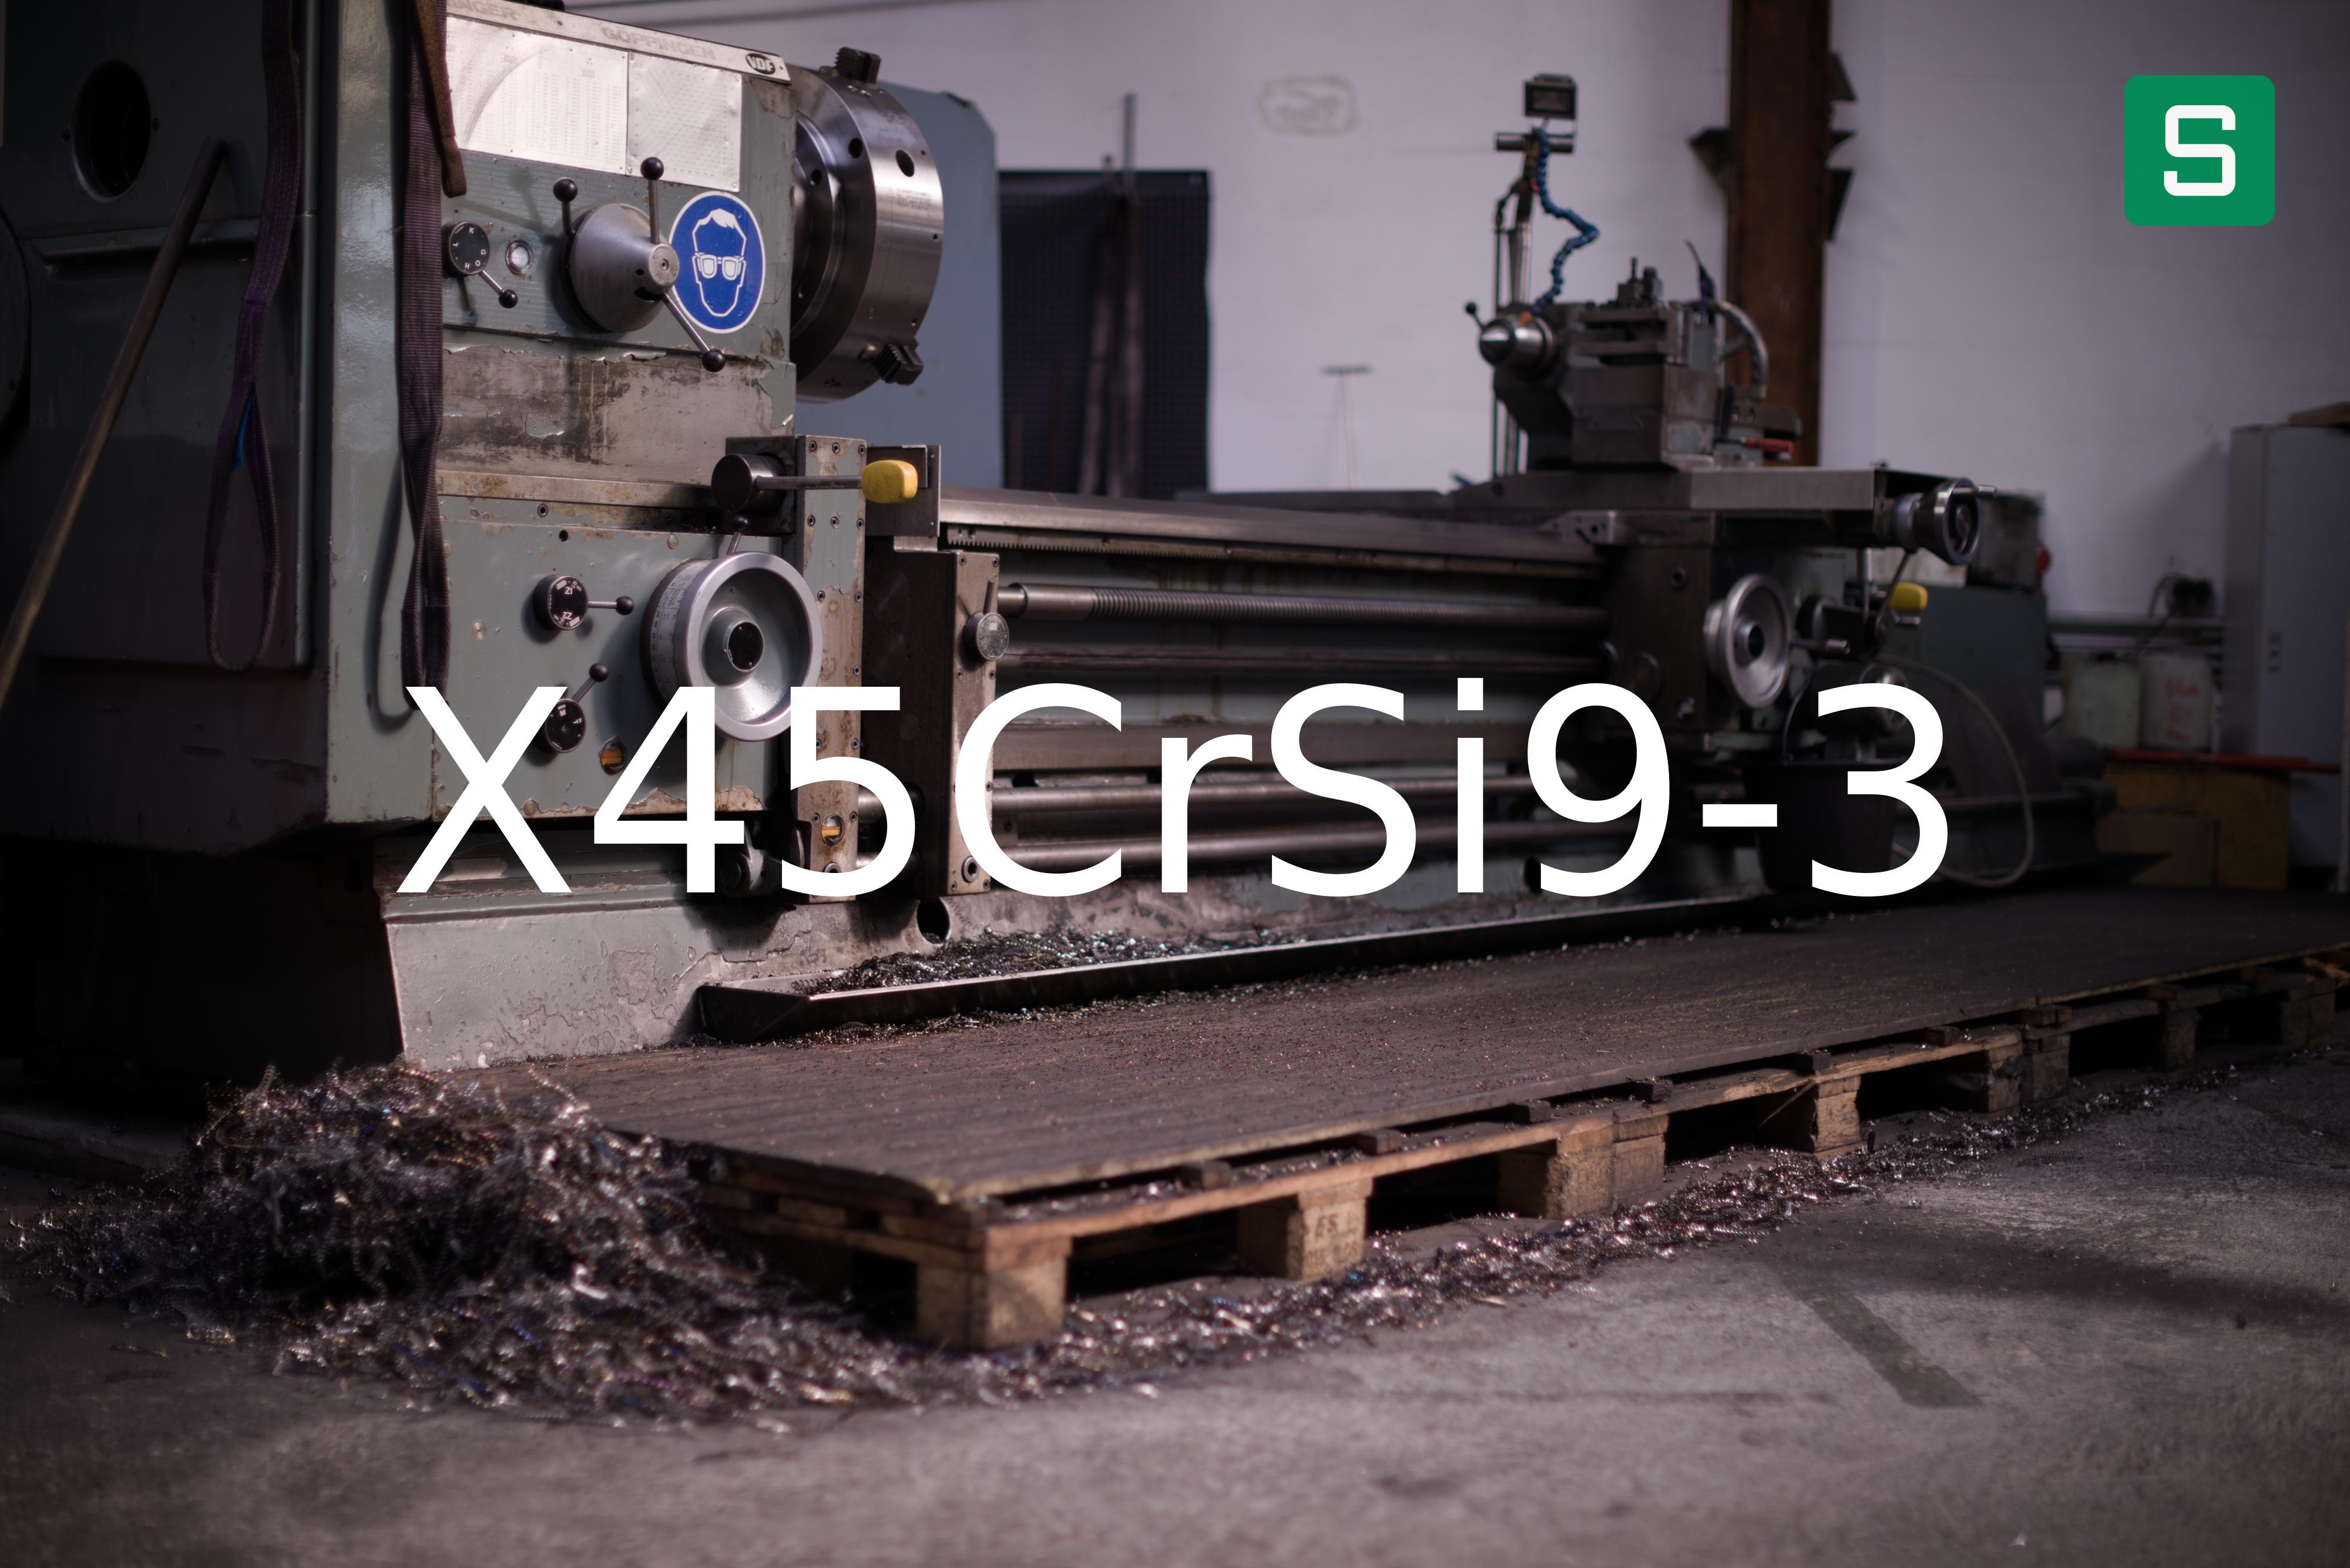 Steel Material: X45CrSi9-3